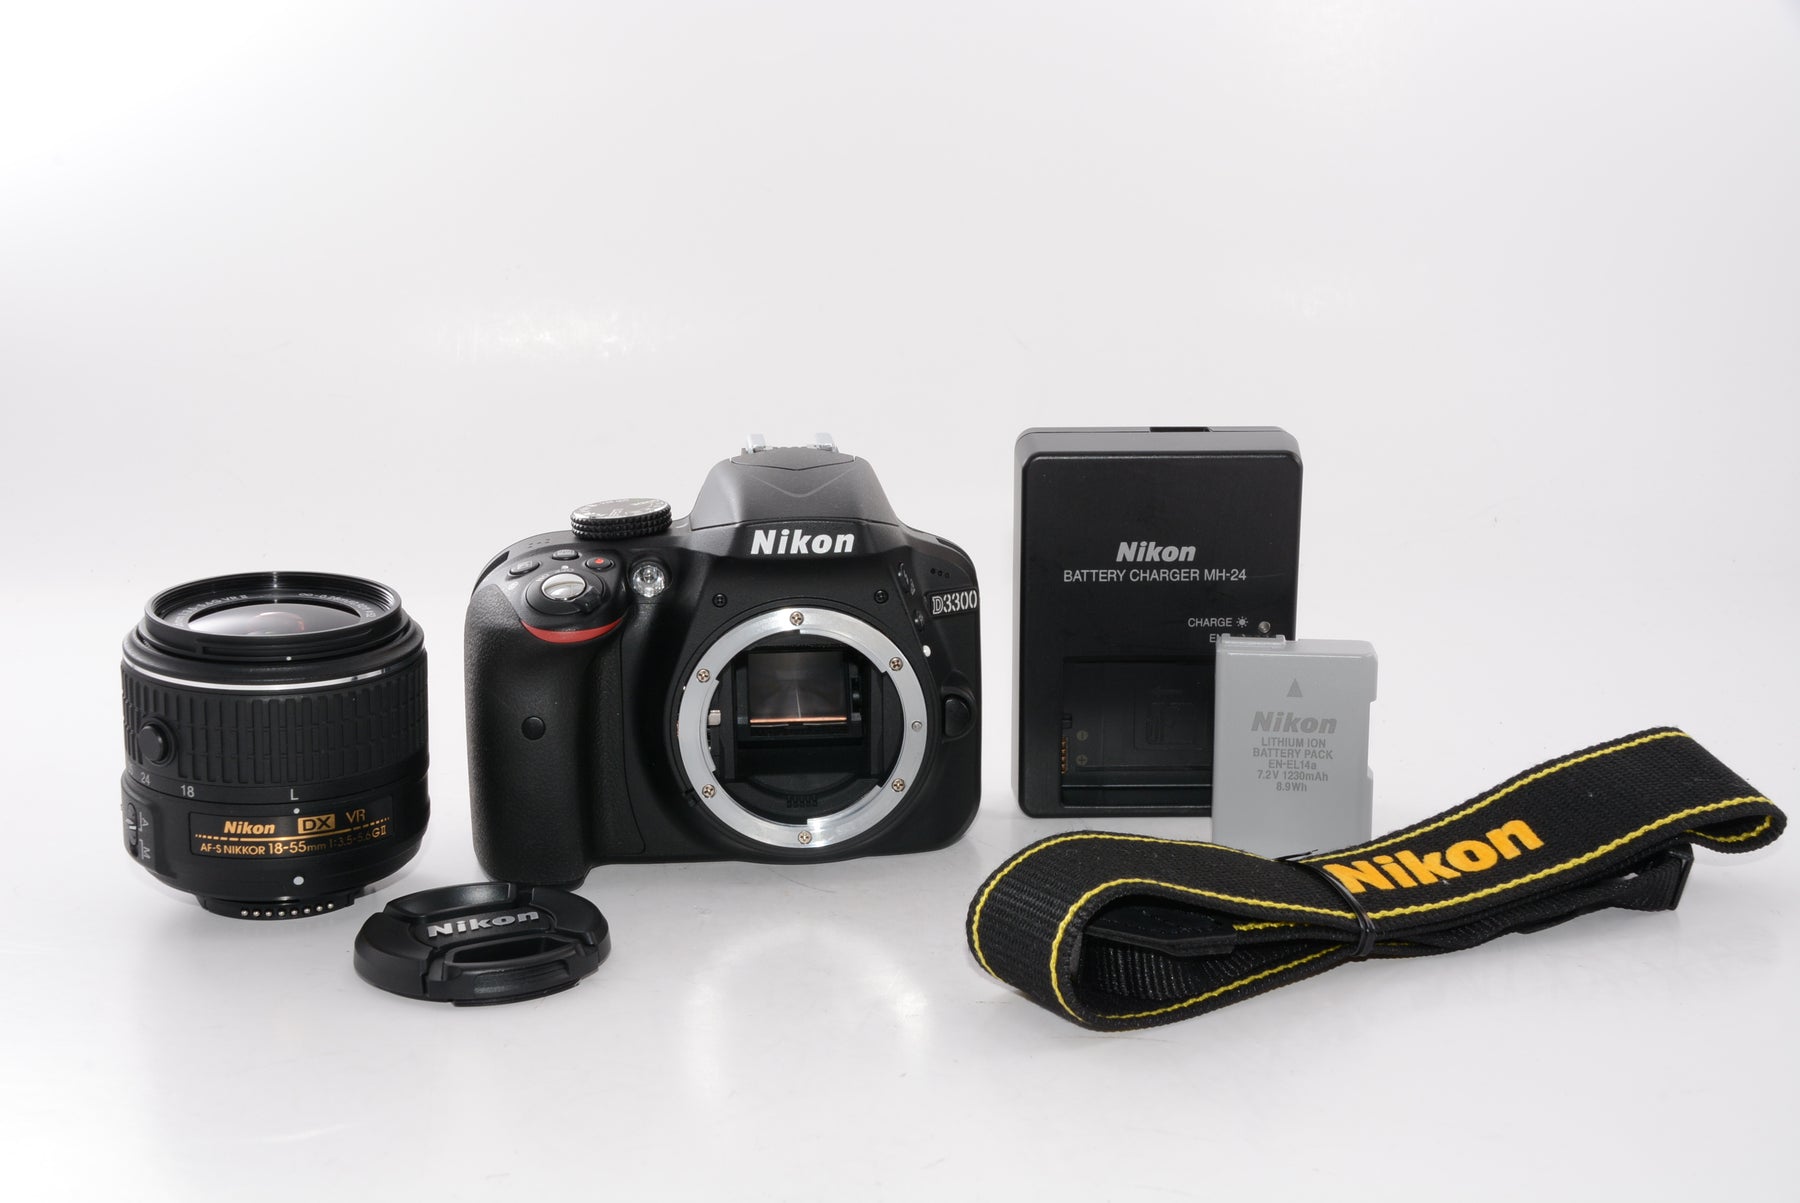 ニコン D3300 18-55 VR II レンズキット ブラックカメラ